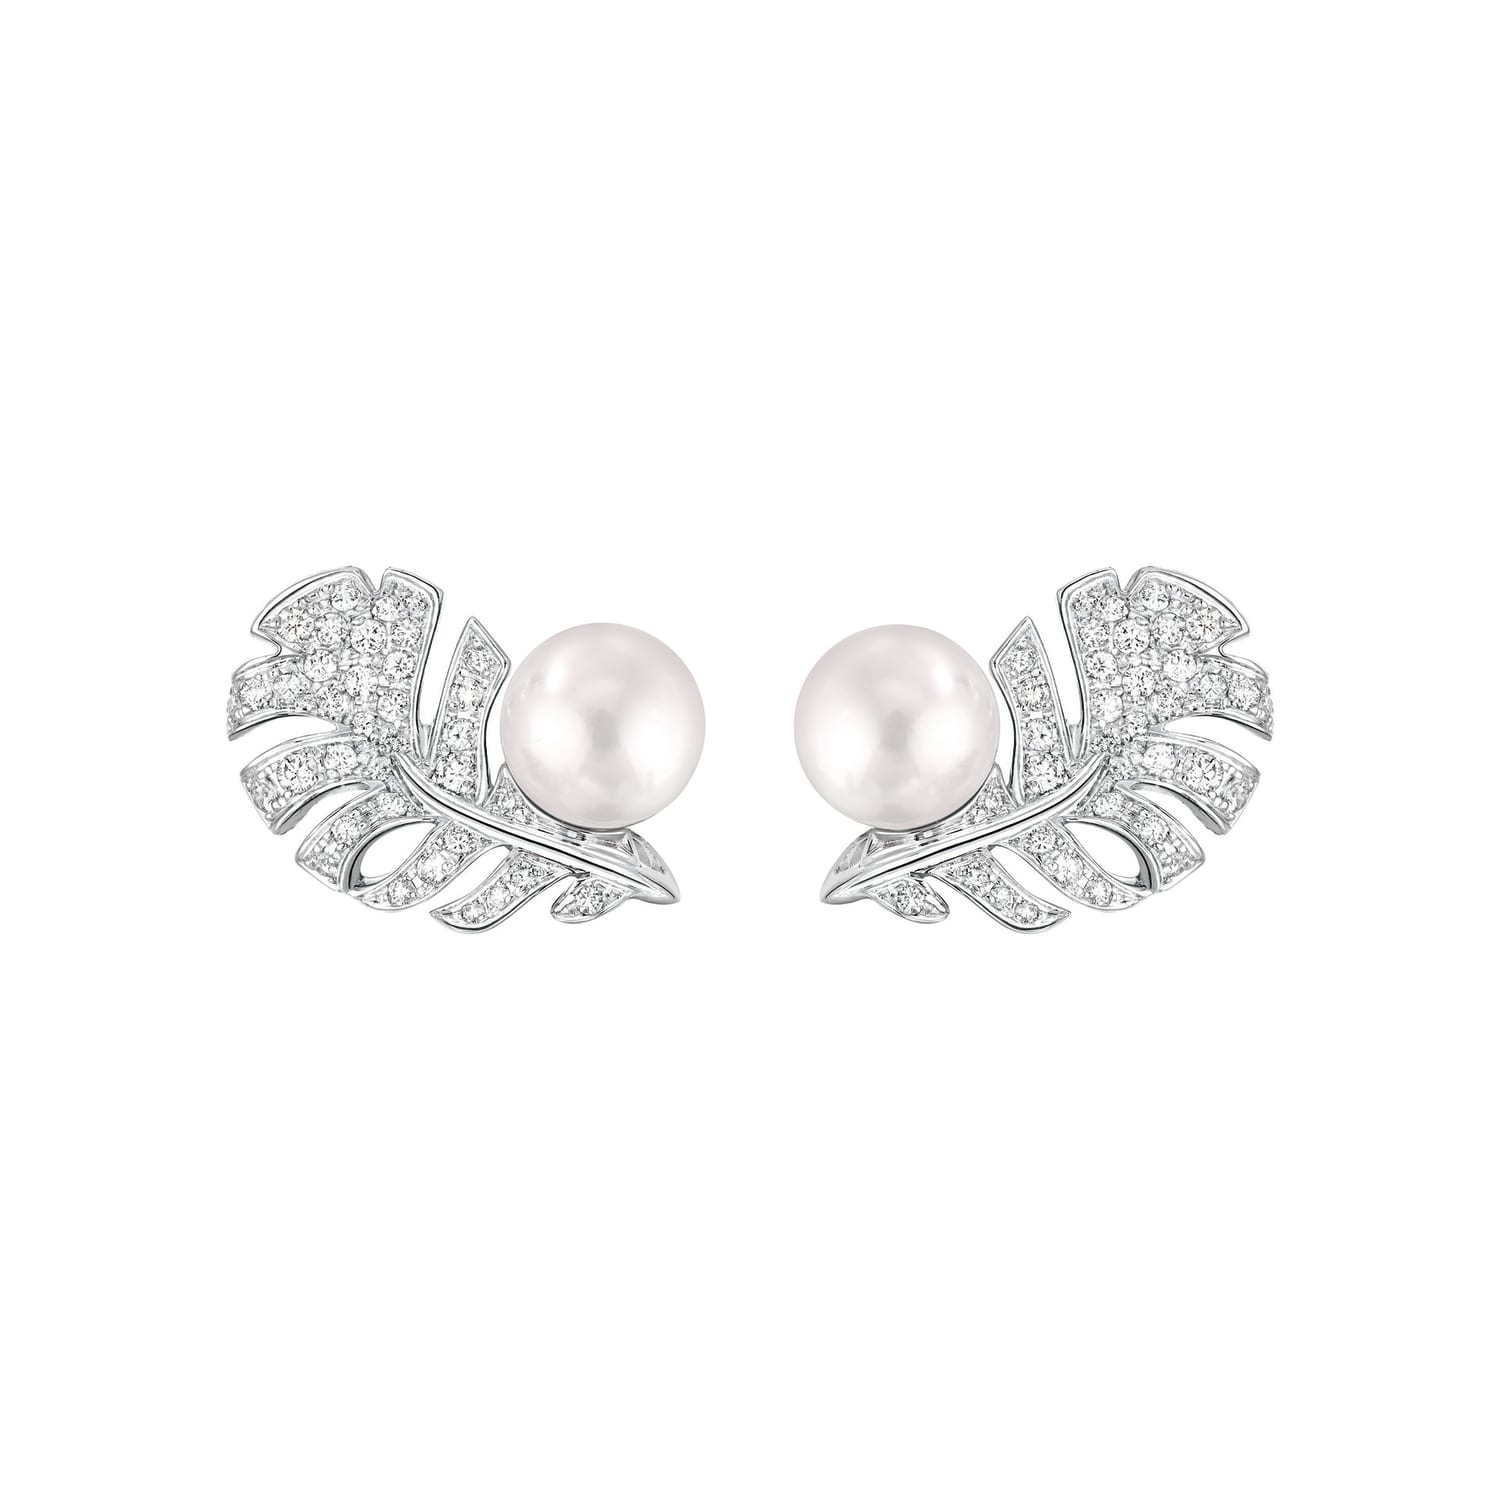 CHANEL FINE JEWELRY PLUME DE CHANEL diamond ring bracelet earrings